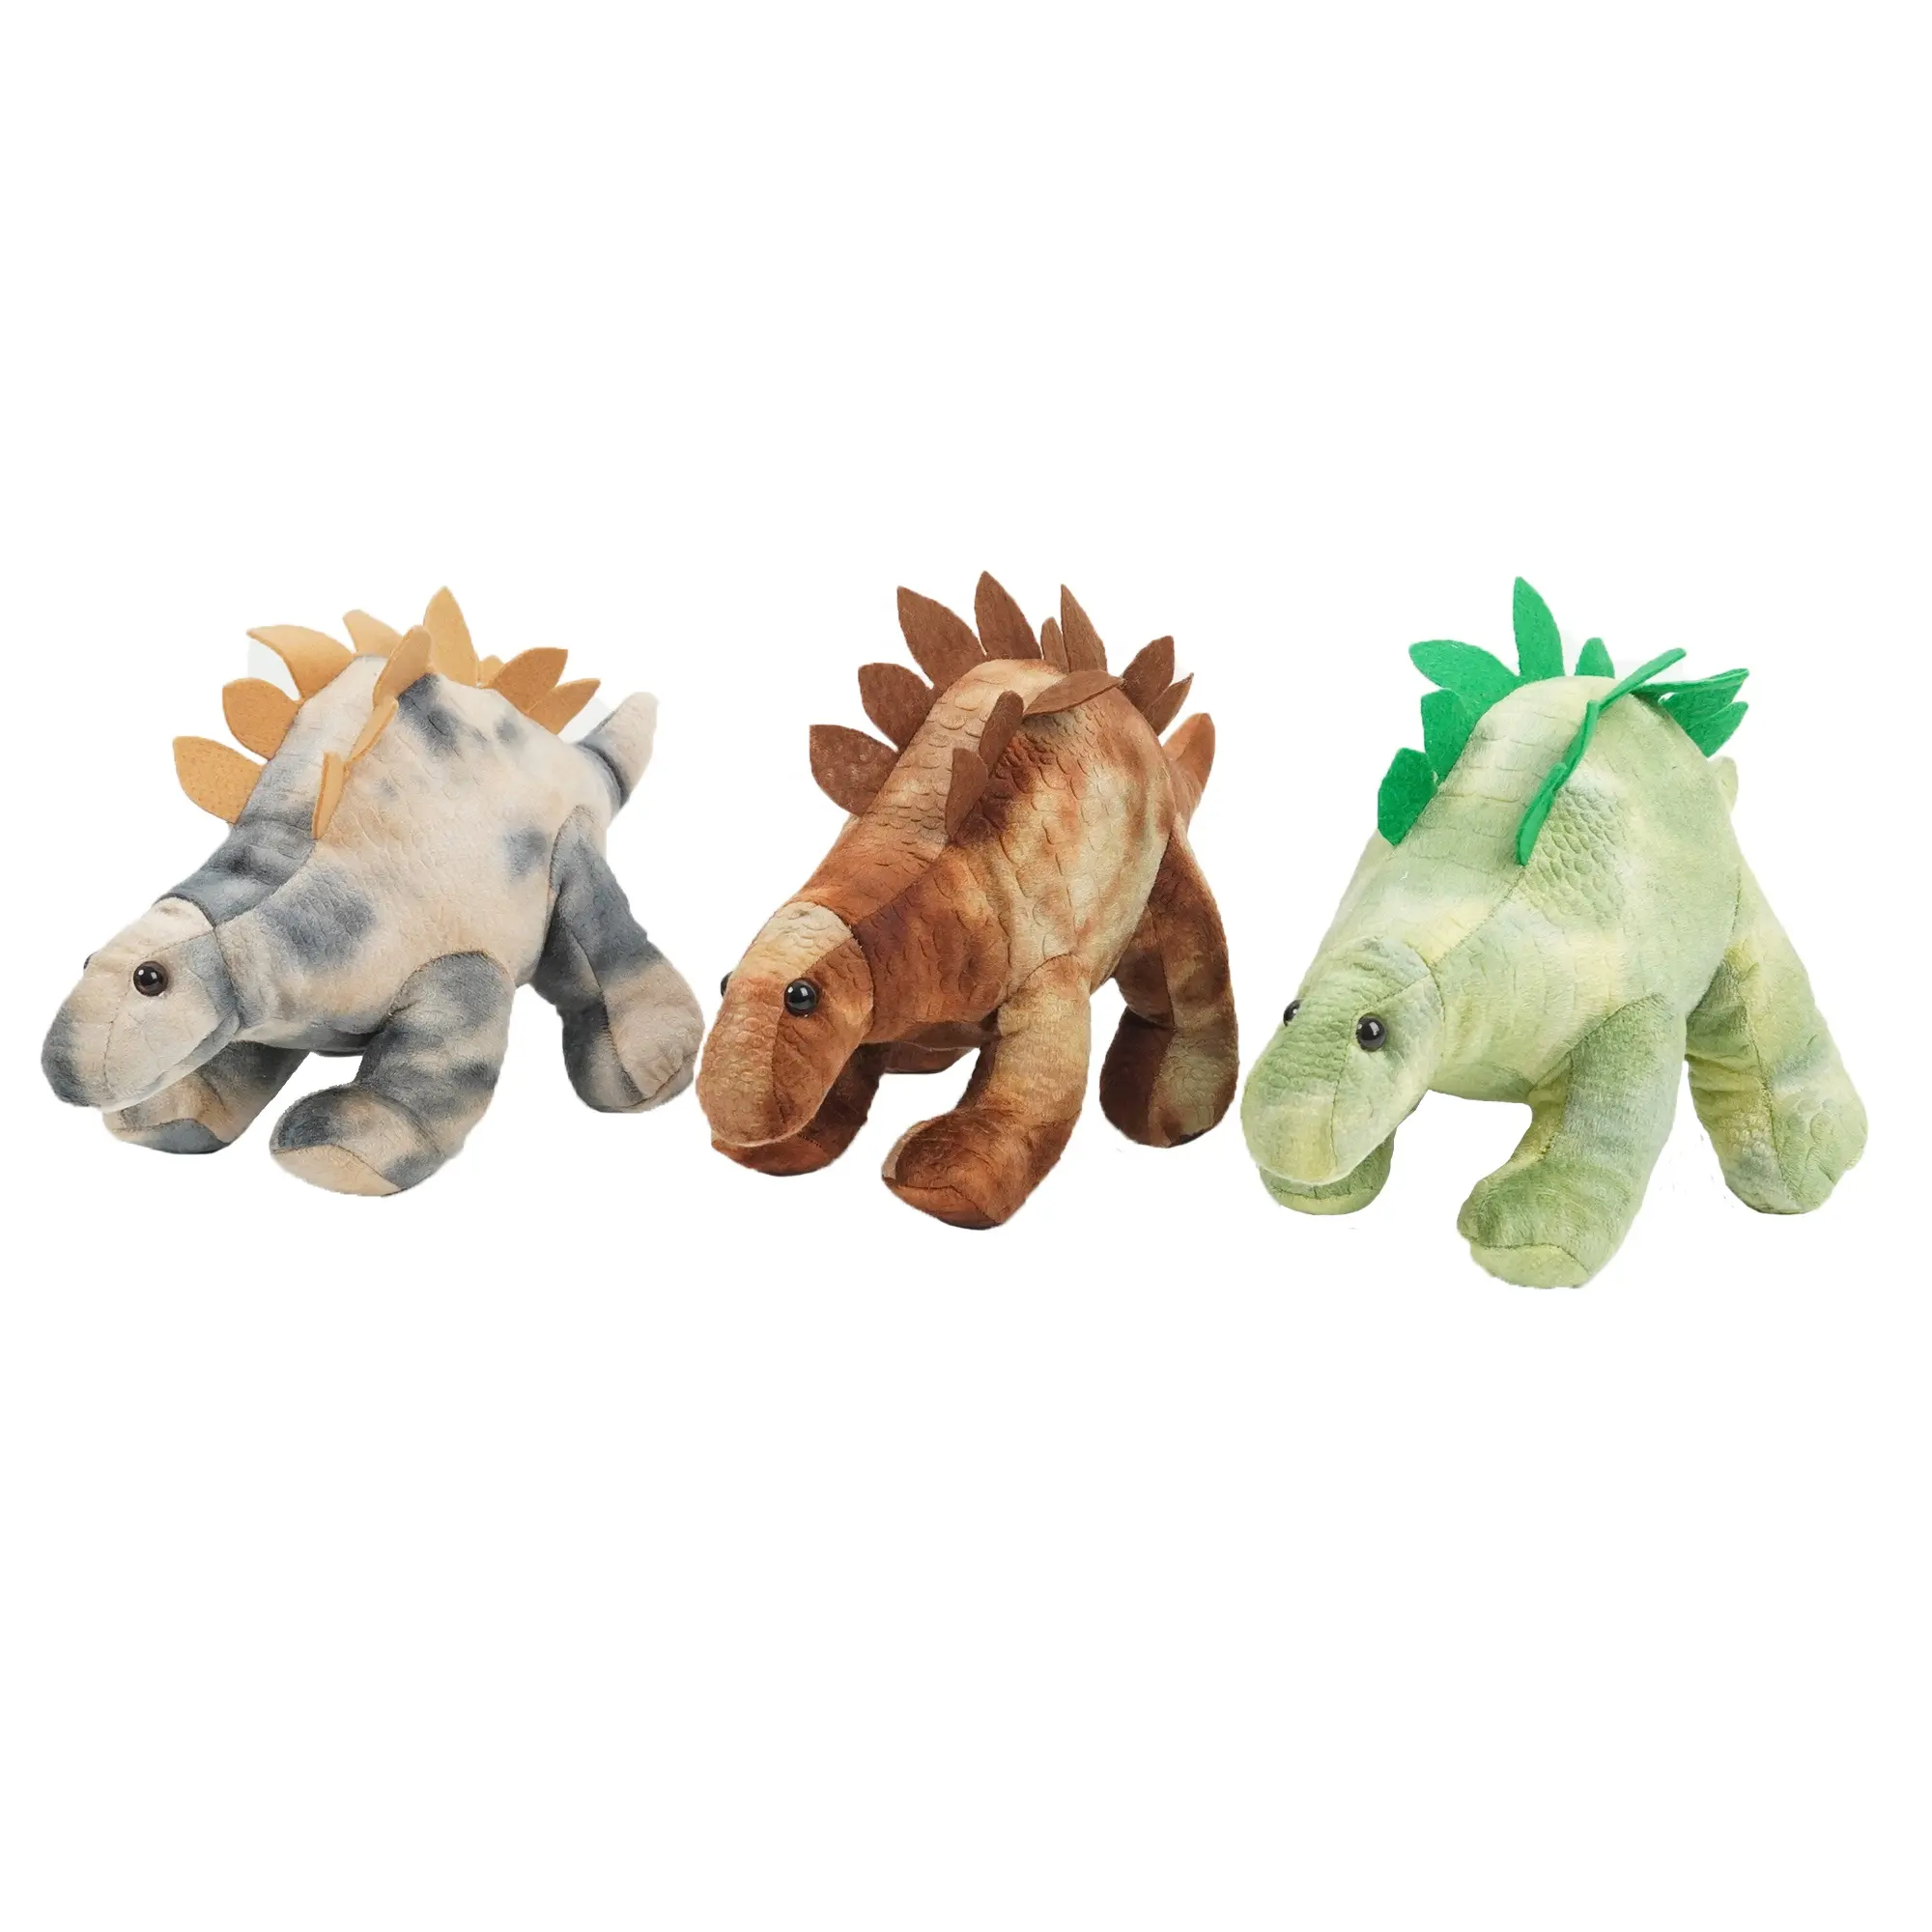 ของเล่นตุ๊กตาเตโกซอรัสสำหรับเด็ก,ตุ๊กตาสัตว์ยัดไส้ไดโนเสาร์ยัดนุ่น